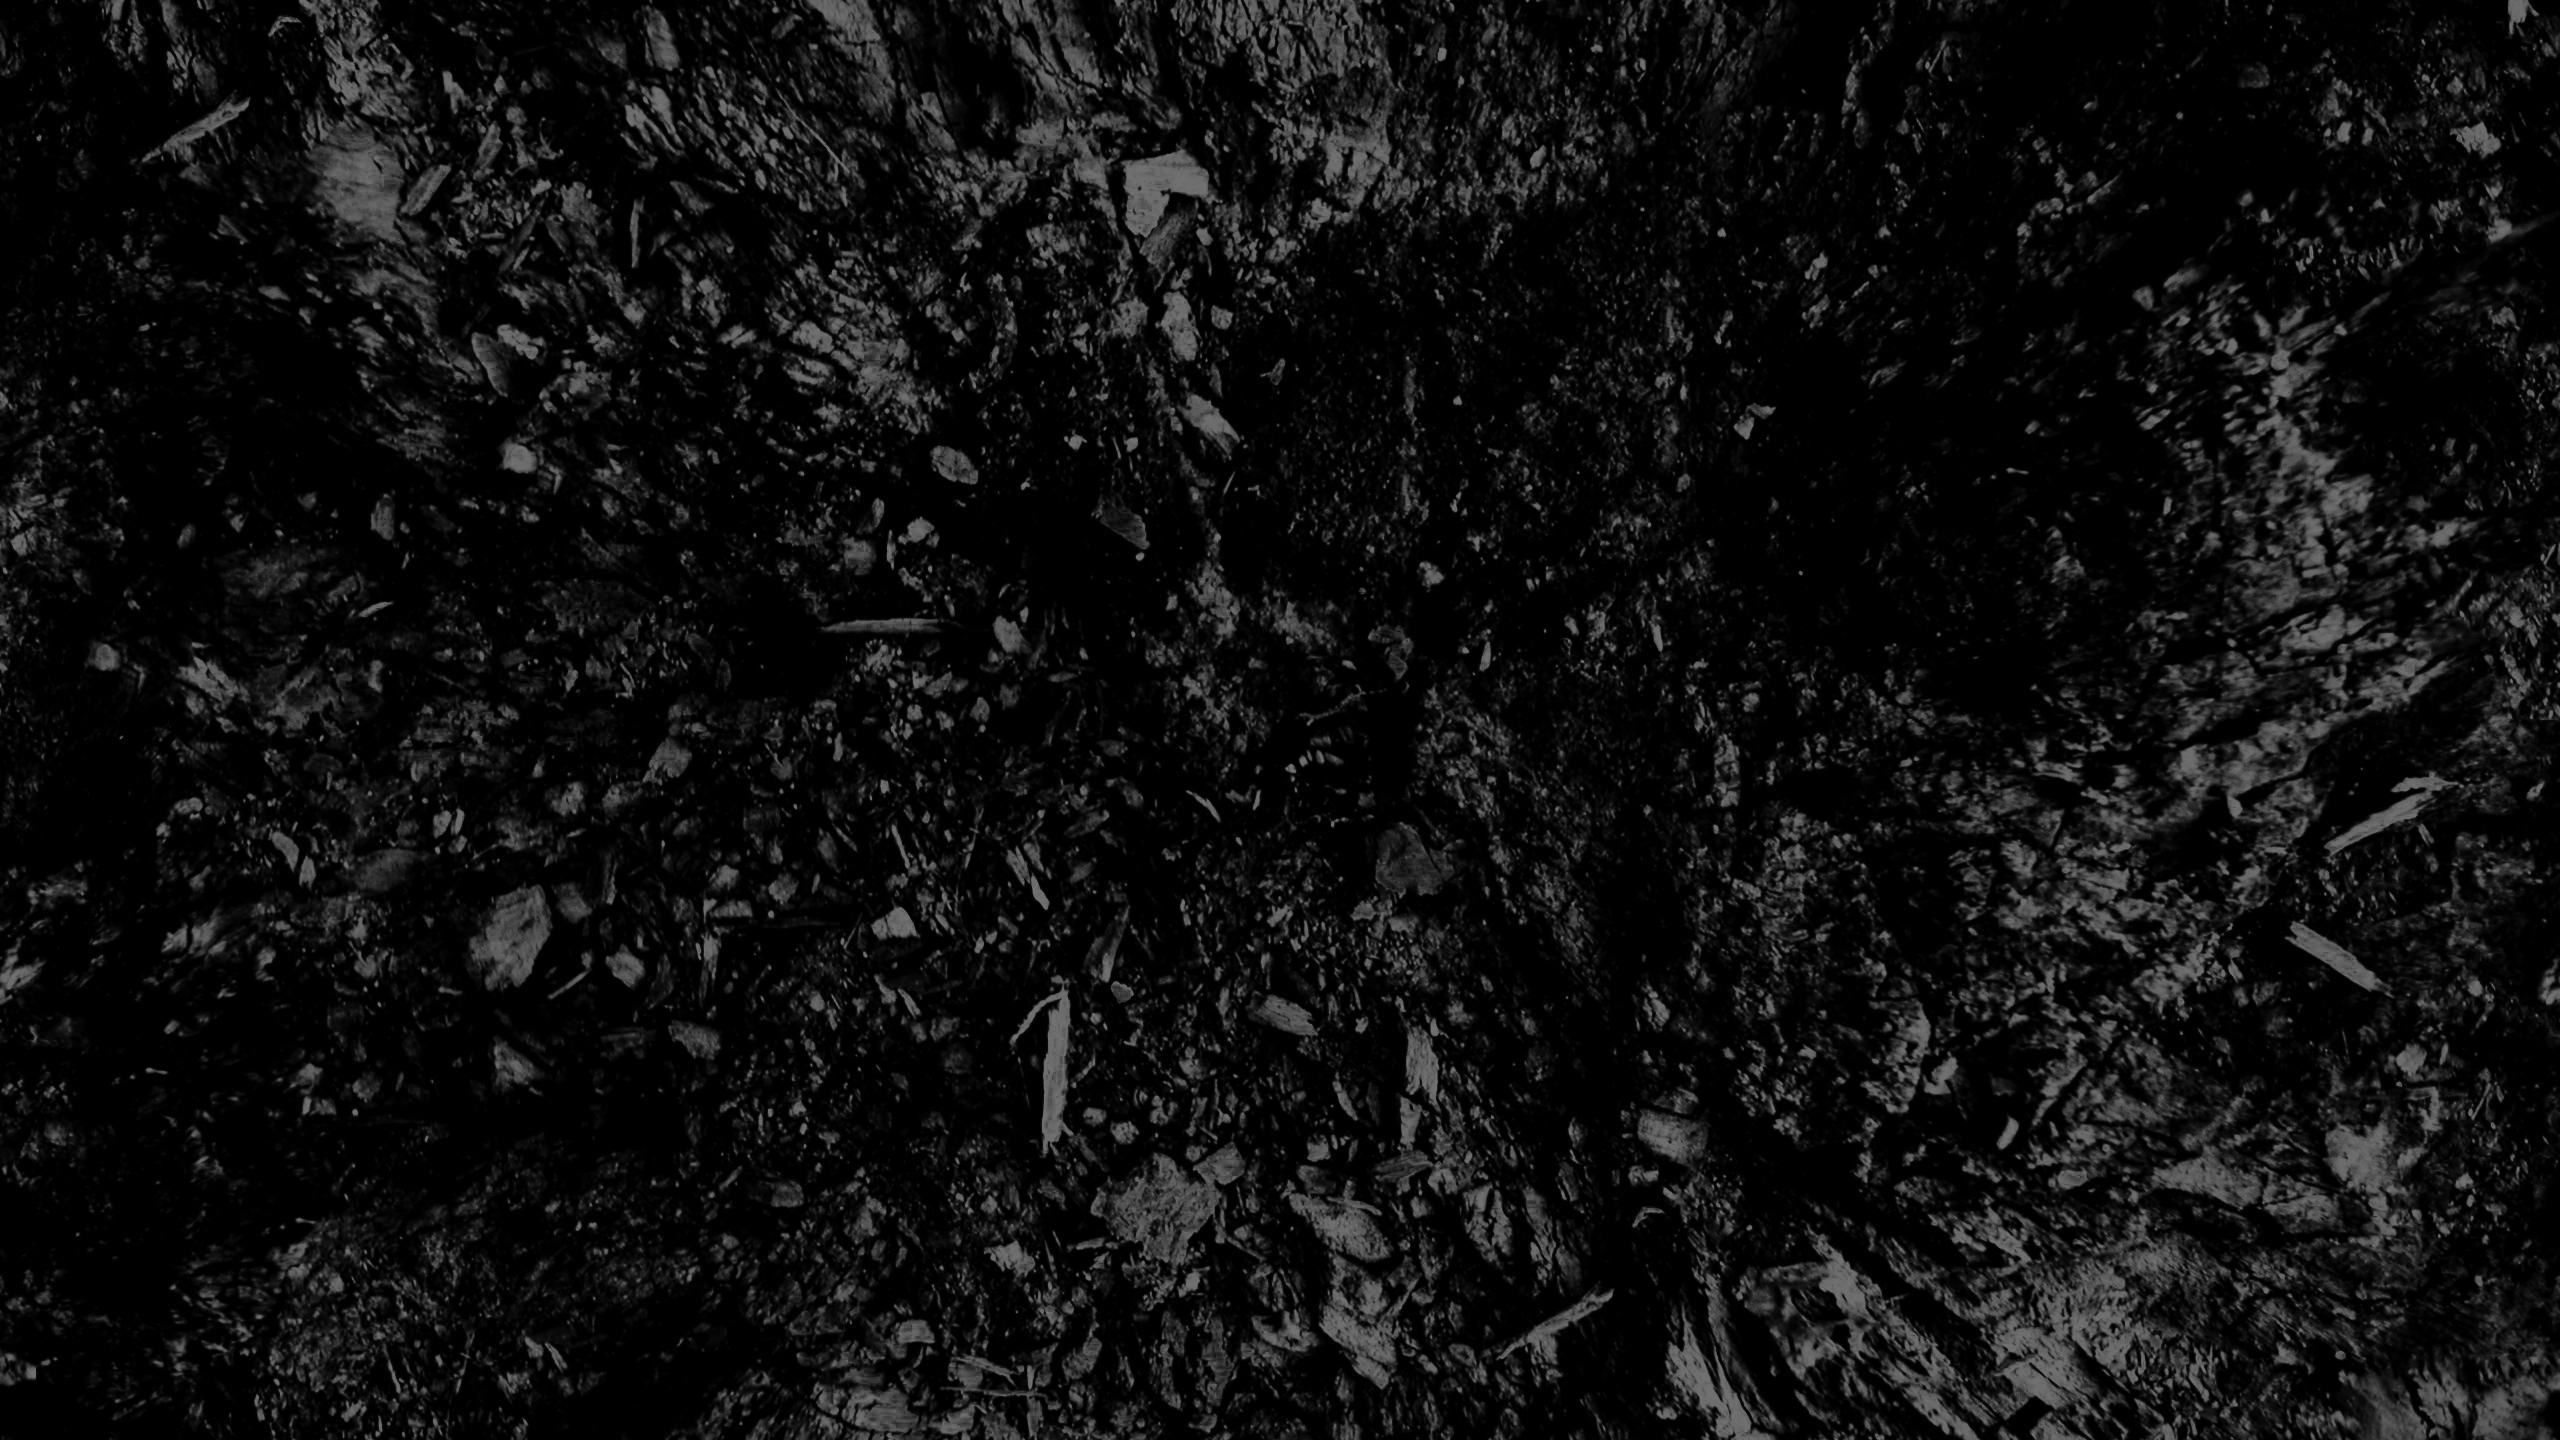 Yosemite at sunset Wallpaper 4k Ultra HD ID:6943